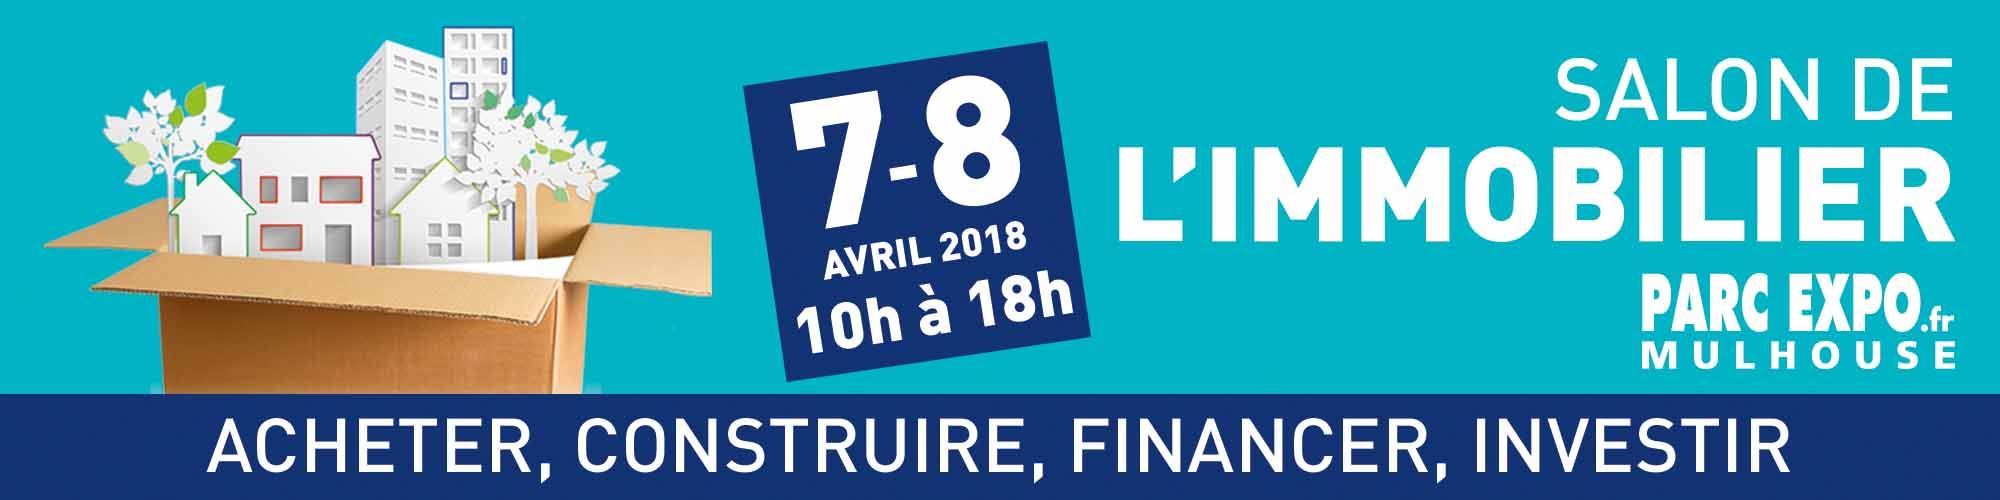 Salon de l’Immobilier 2019 à Mulhouse